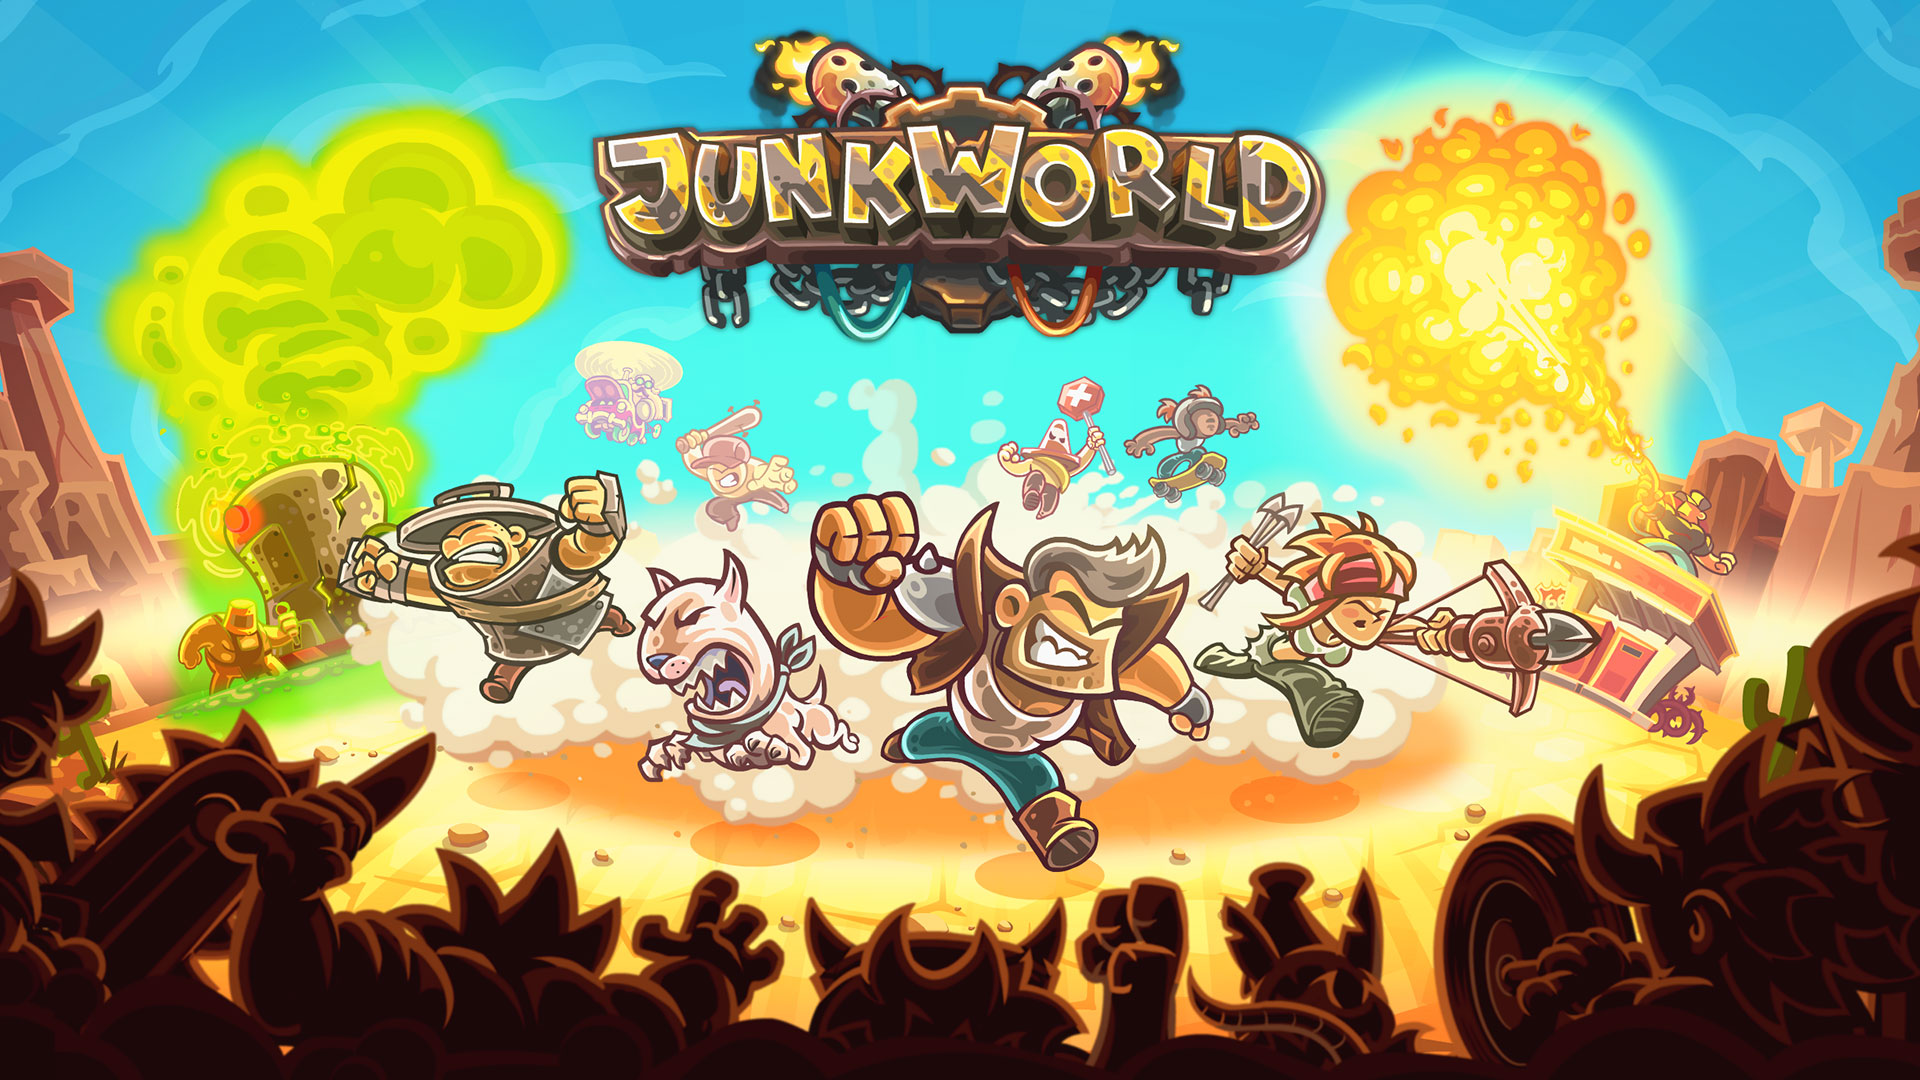 Junkworld TD for mac download free